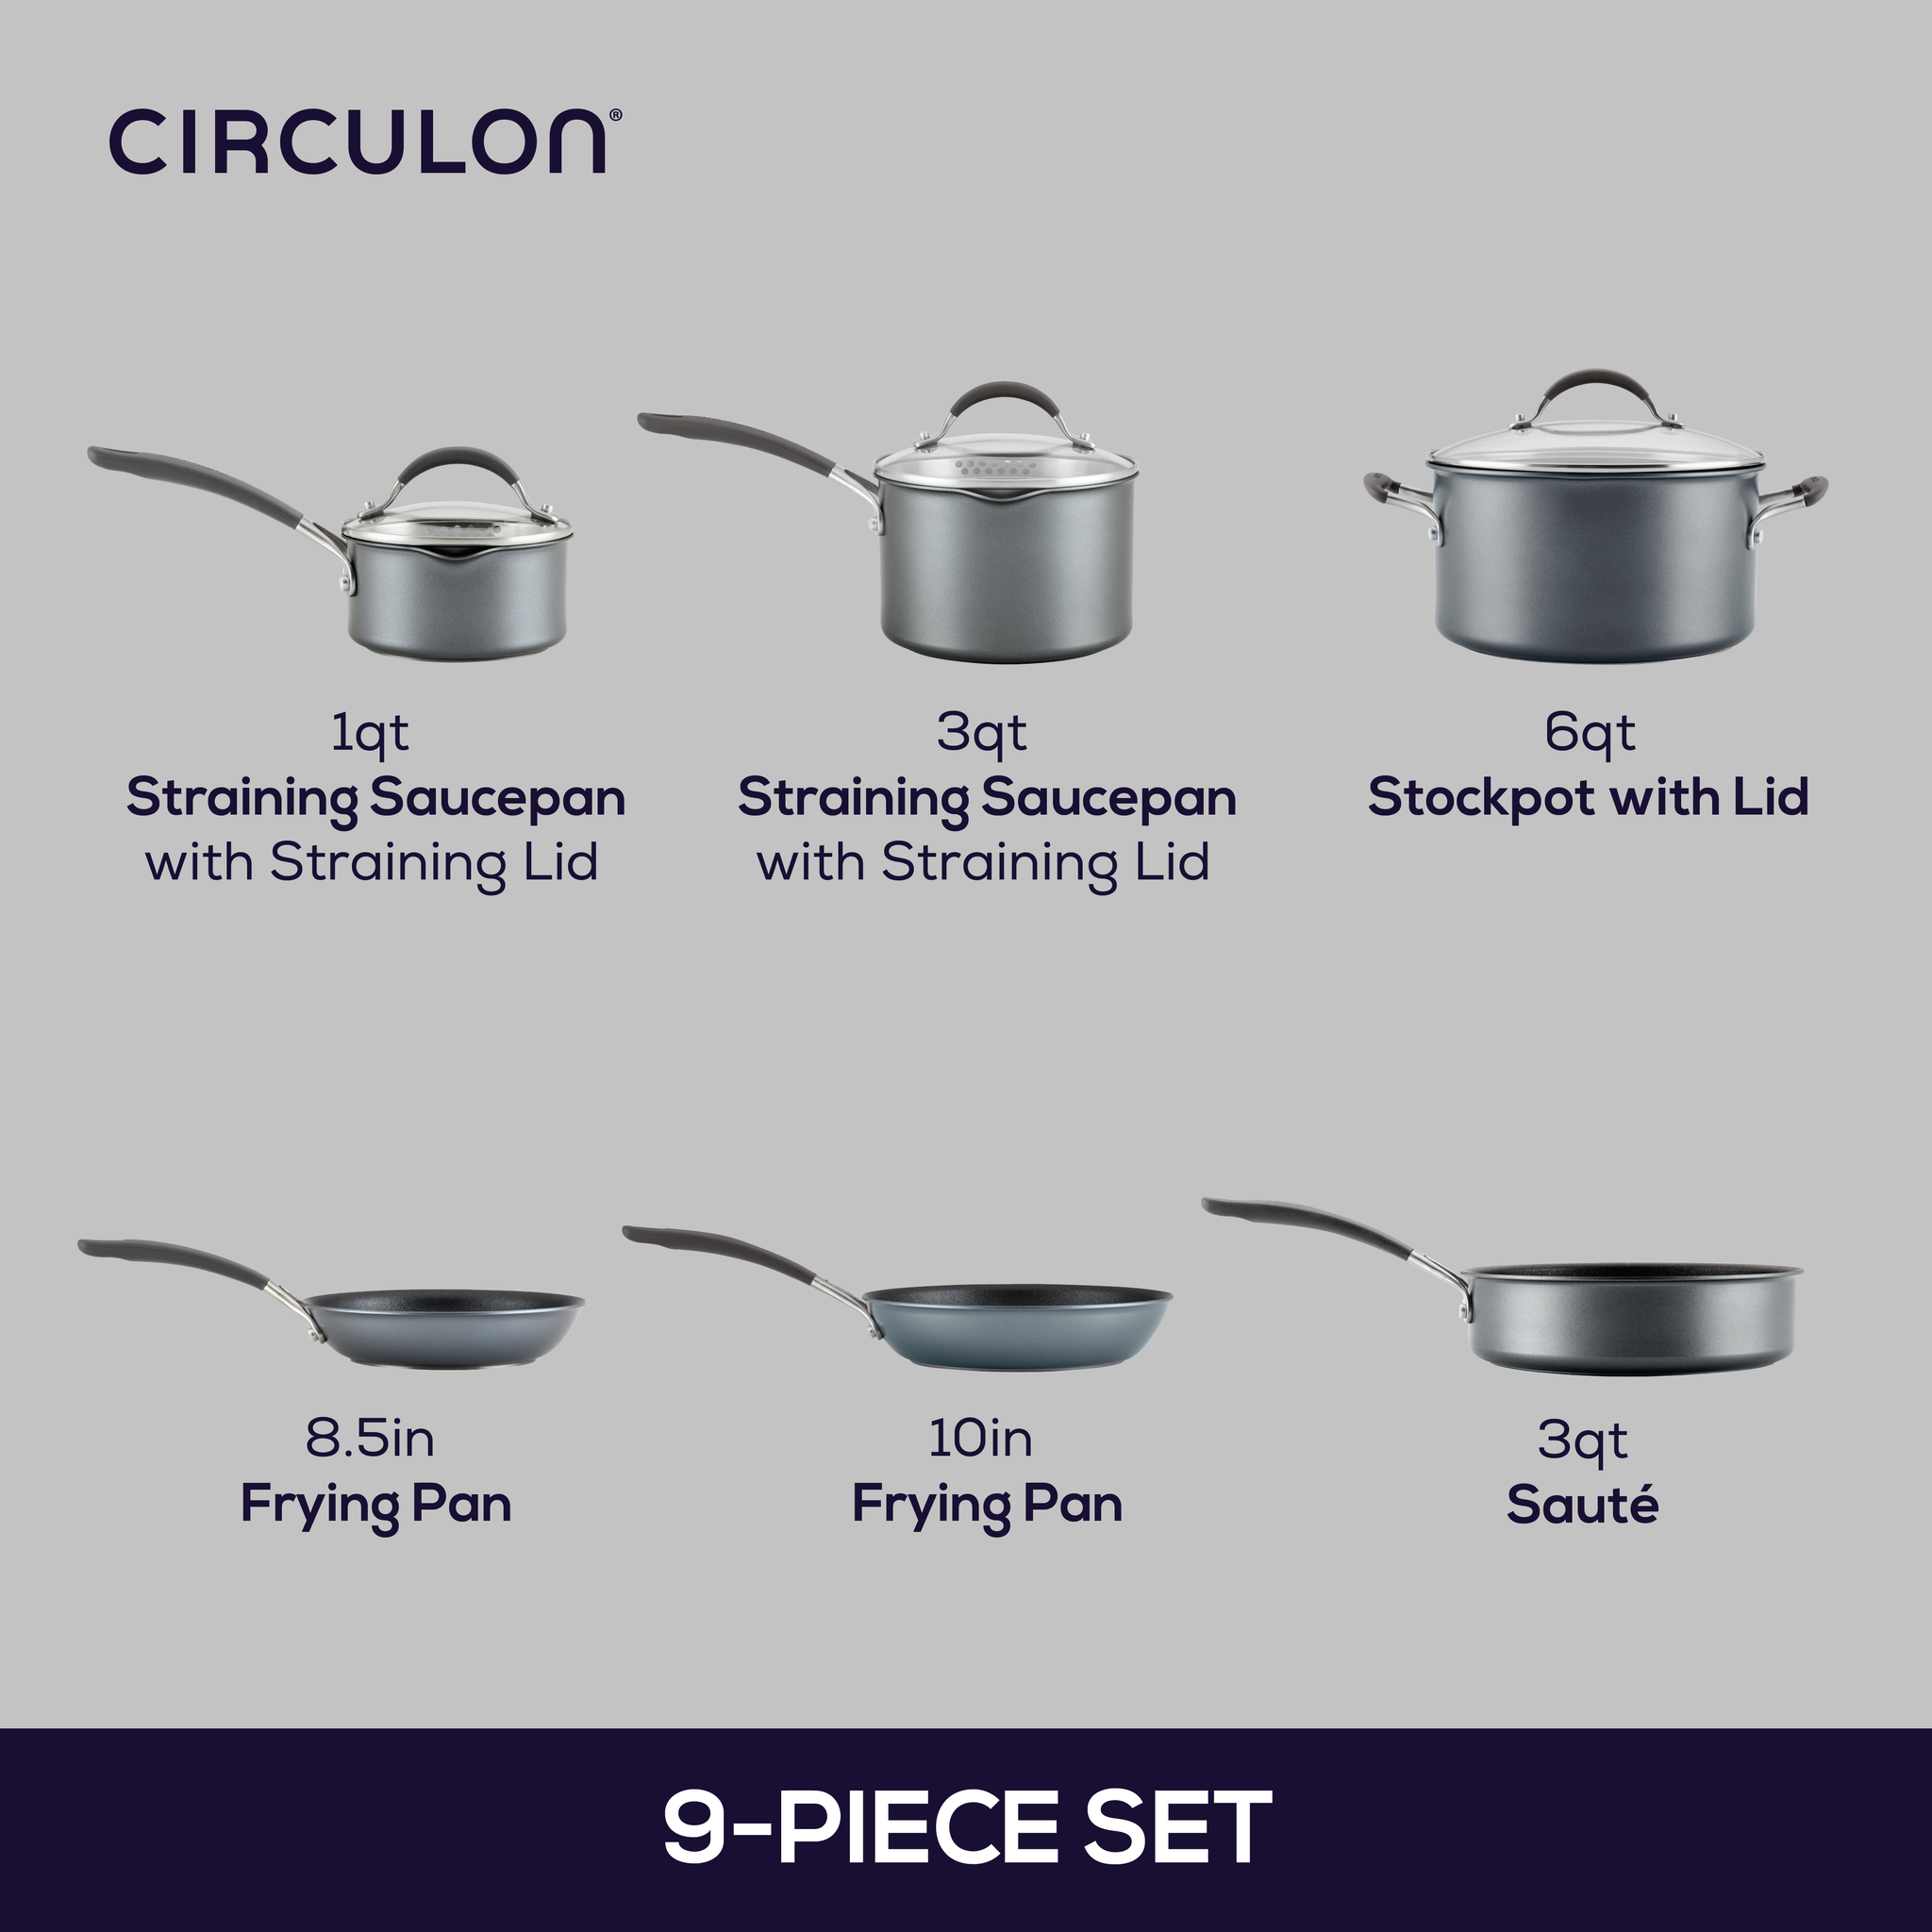 8-Piece ScratchDefense Nonstick Cookware Set – Circulon